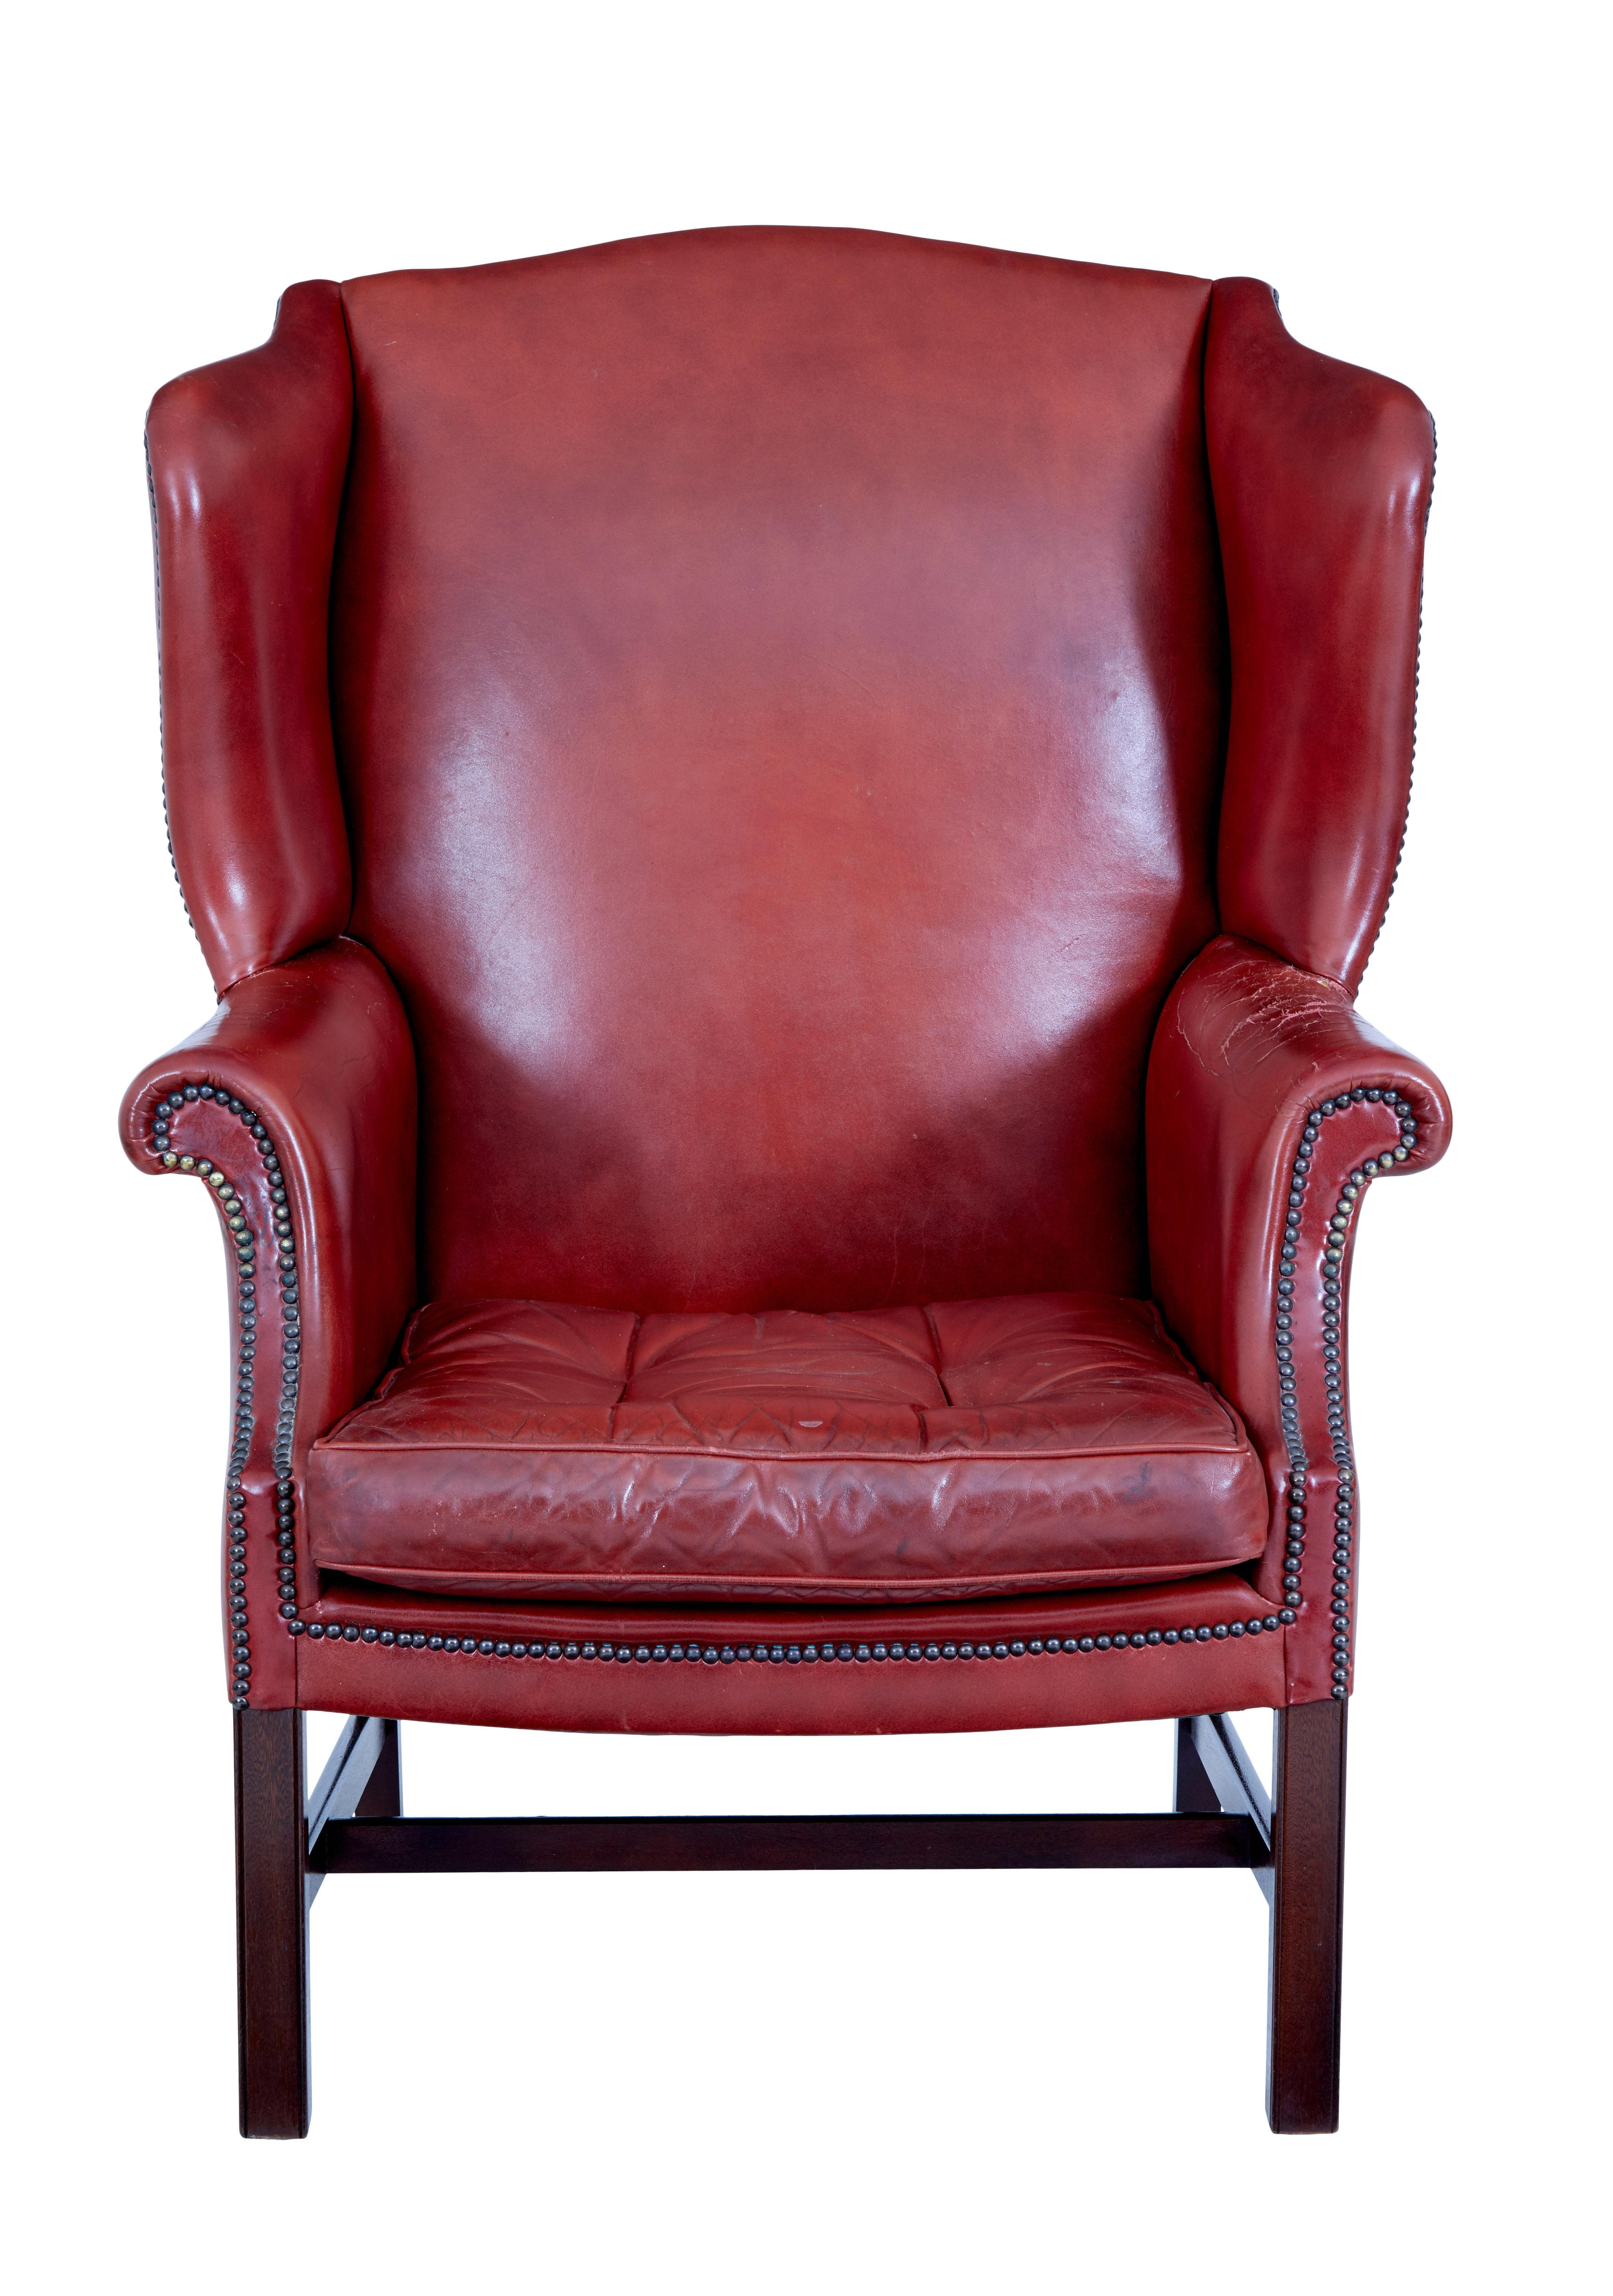 Ledersessel mit Rückenlehne aus der Mitte des 20. Jahrhunderts, ca. 1950.

Großartige Proportionen bei diesem Lederlehnstuhl.  Tiefrote Farbe mit Nietenverzierung an den Armlehnen, abnehmbares Sitzkissen mit Knöpfen und Paspel.

Steht auf einem